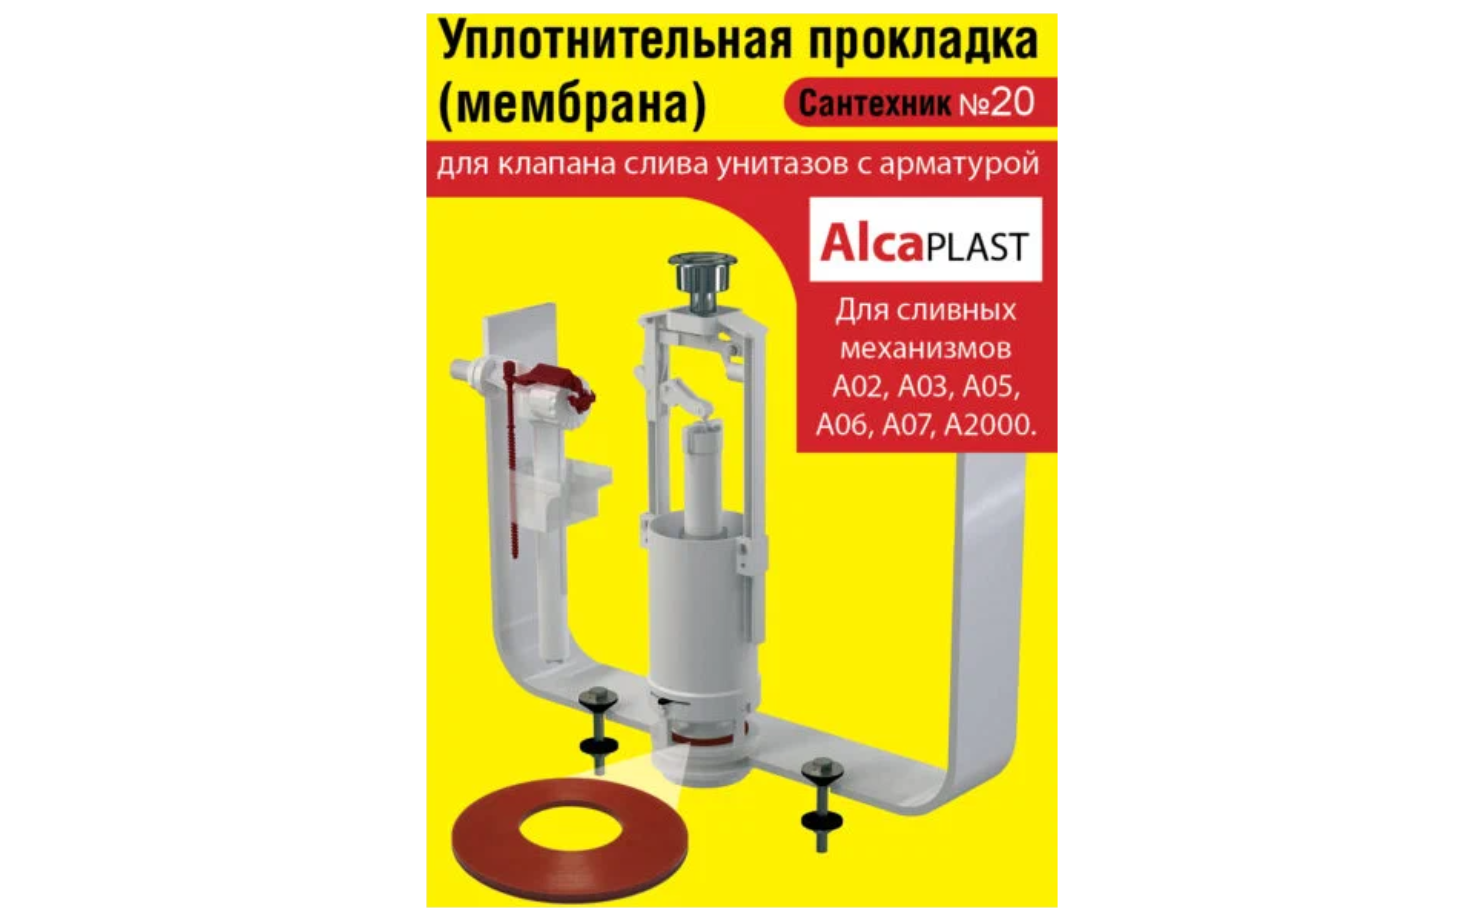 Сантехник №20 силиконовая мембрана арматуры Alcaplast (механизмы А02 А03 А05 А06 А07 А2000)